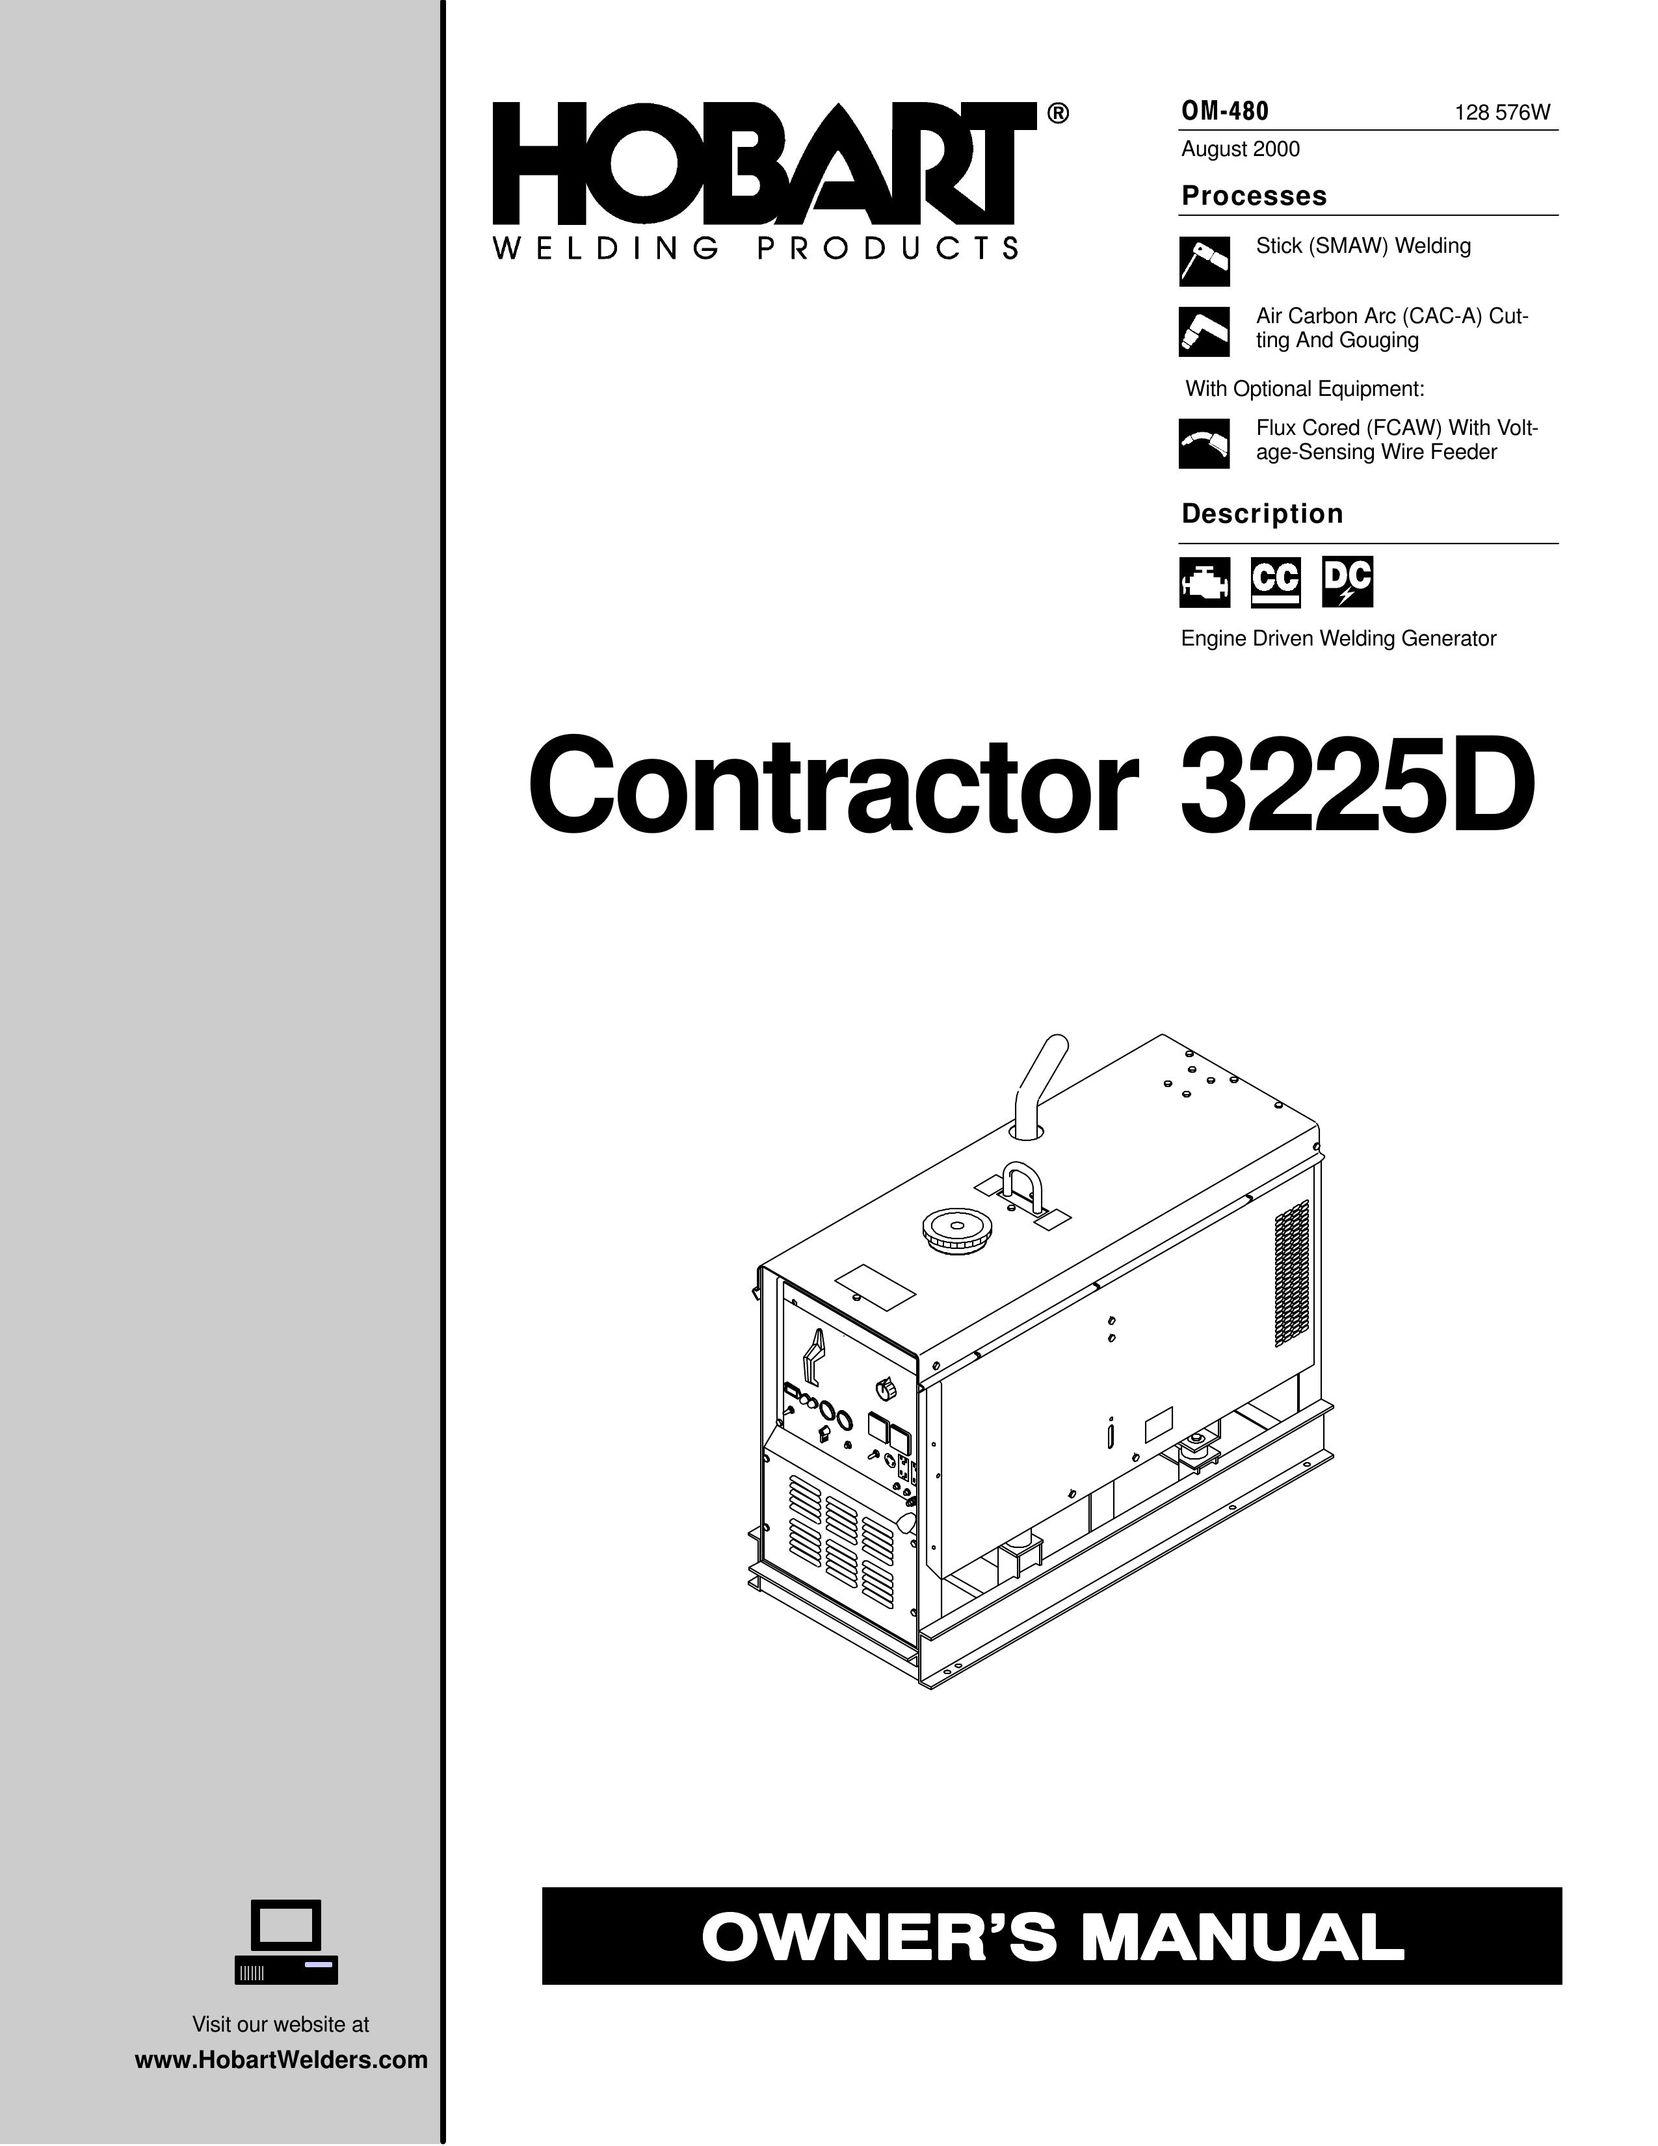 Hobart Welding Products 3225D Welder User Manual